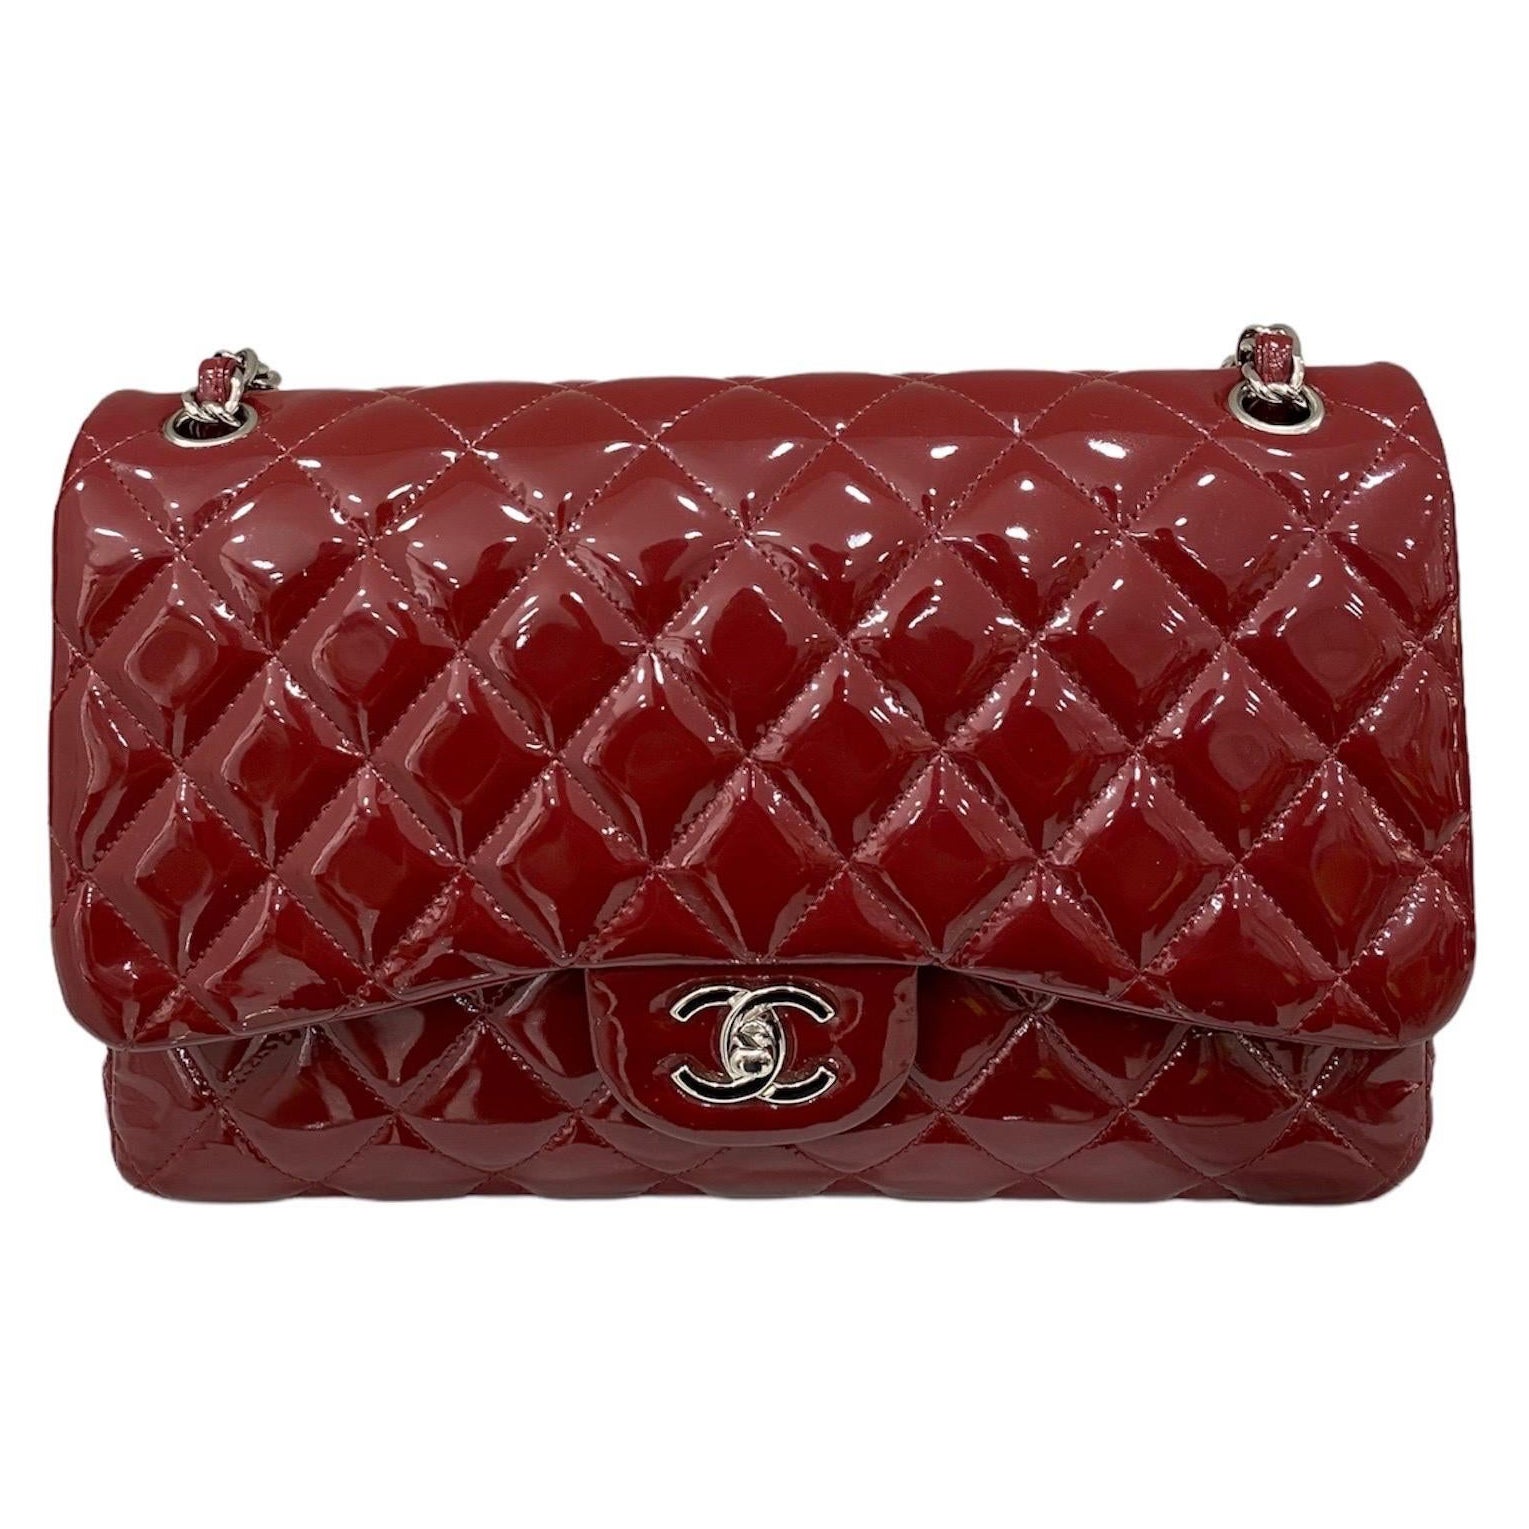 2011 Chanel Jumbo Red Vernis Shoulder Bag